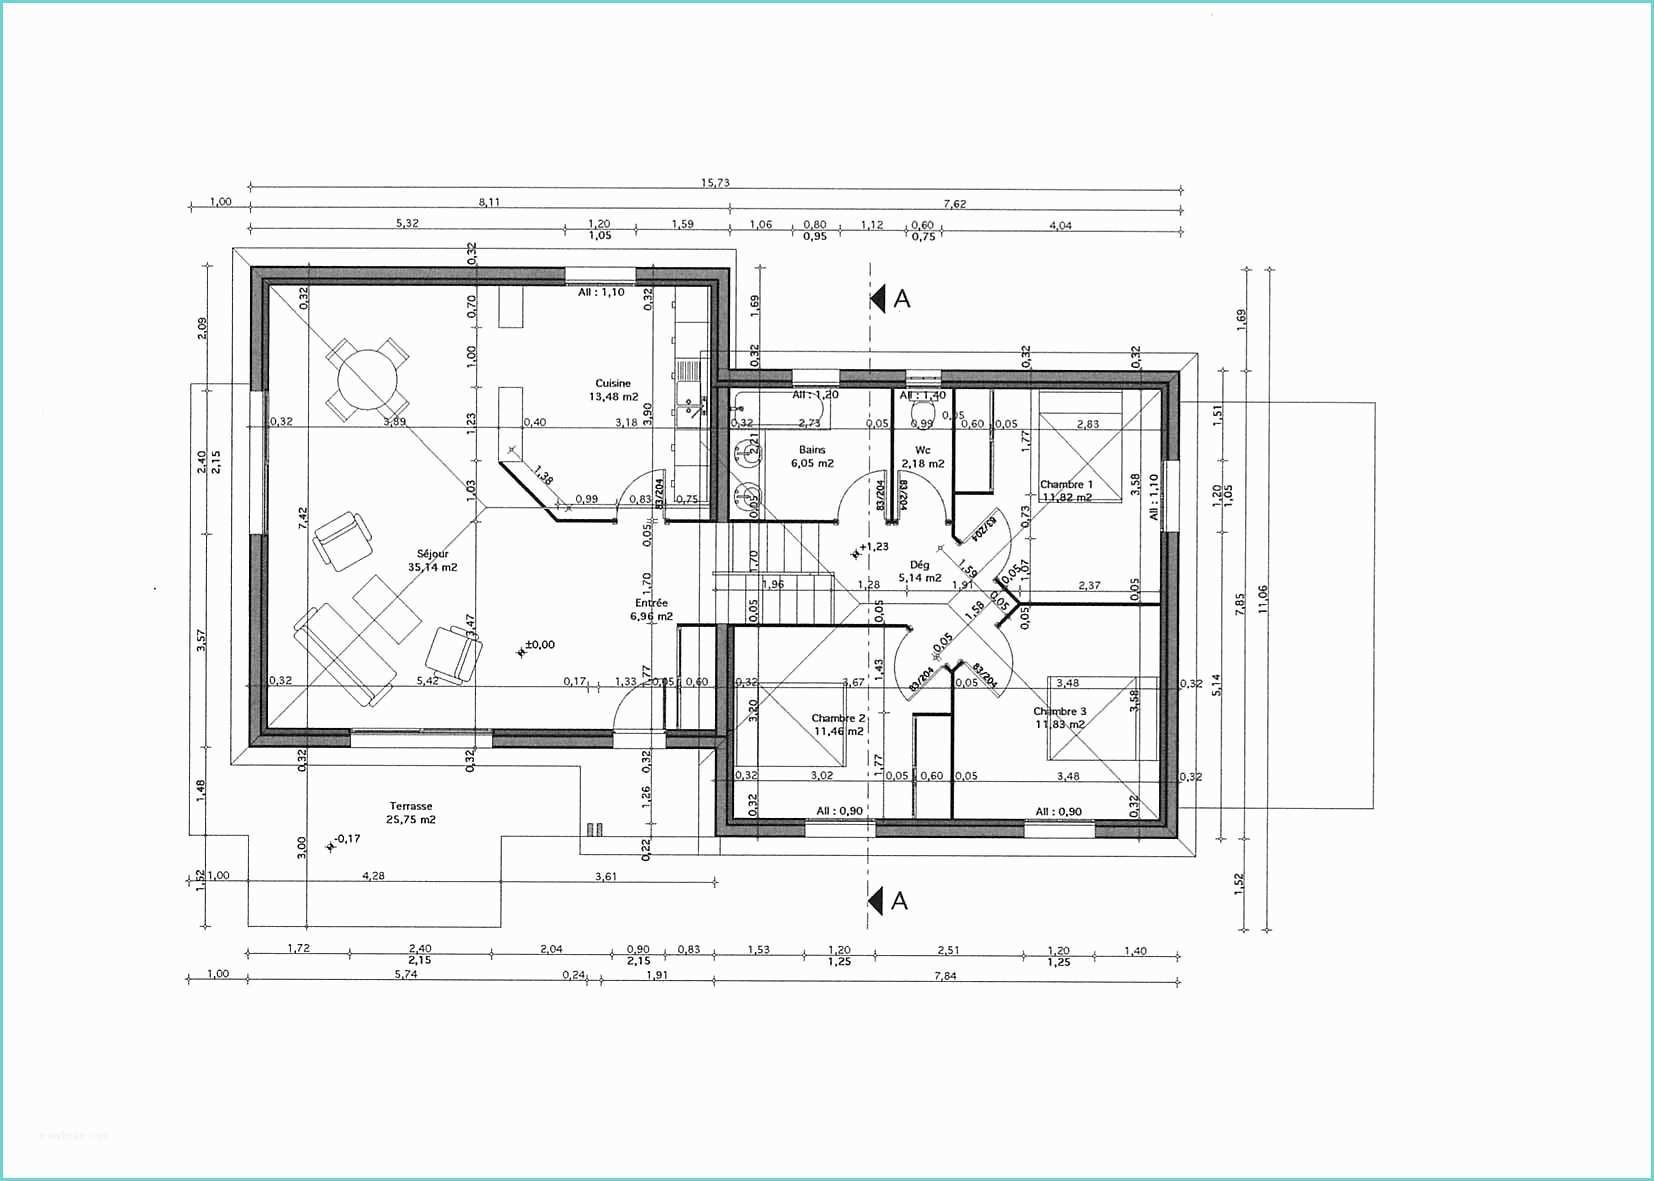 Plan De Maison Moderne Gratuit A Telecharger Maison Design Moderne areyaa Con Plan Maison Pdf 3d E